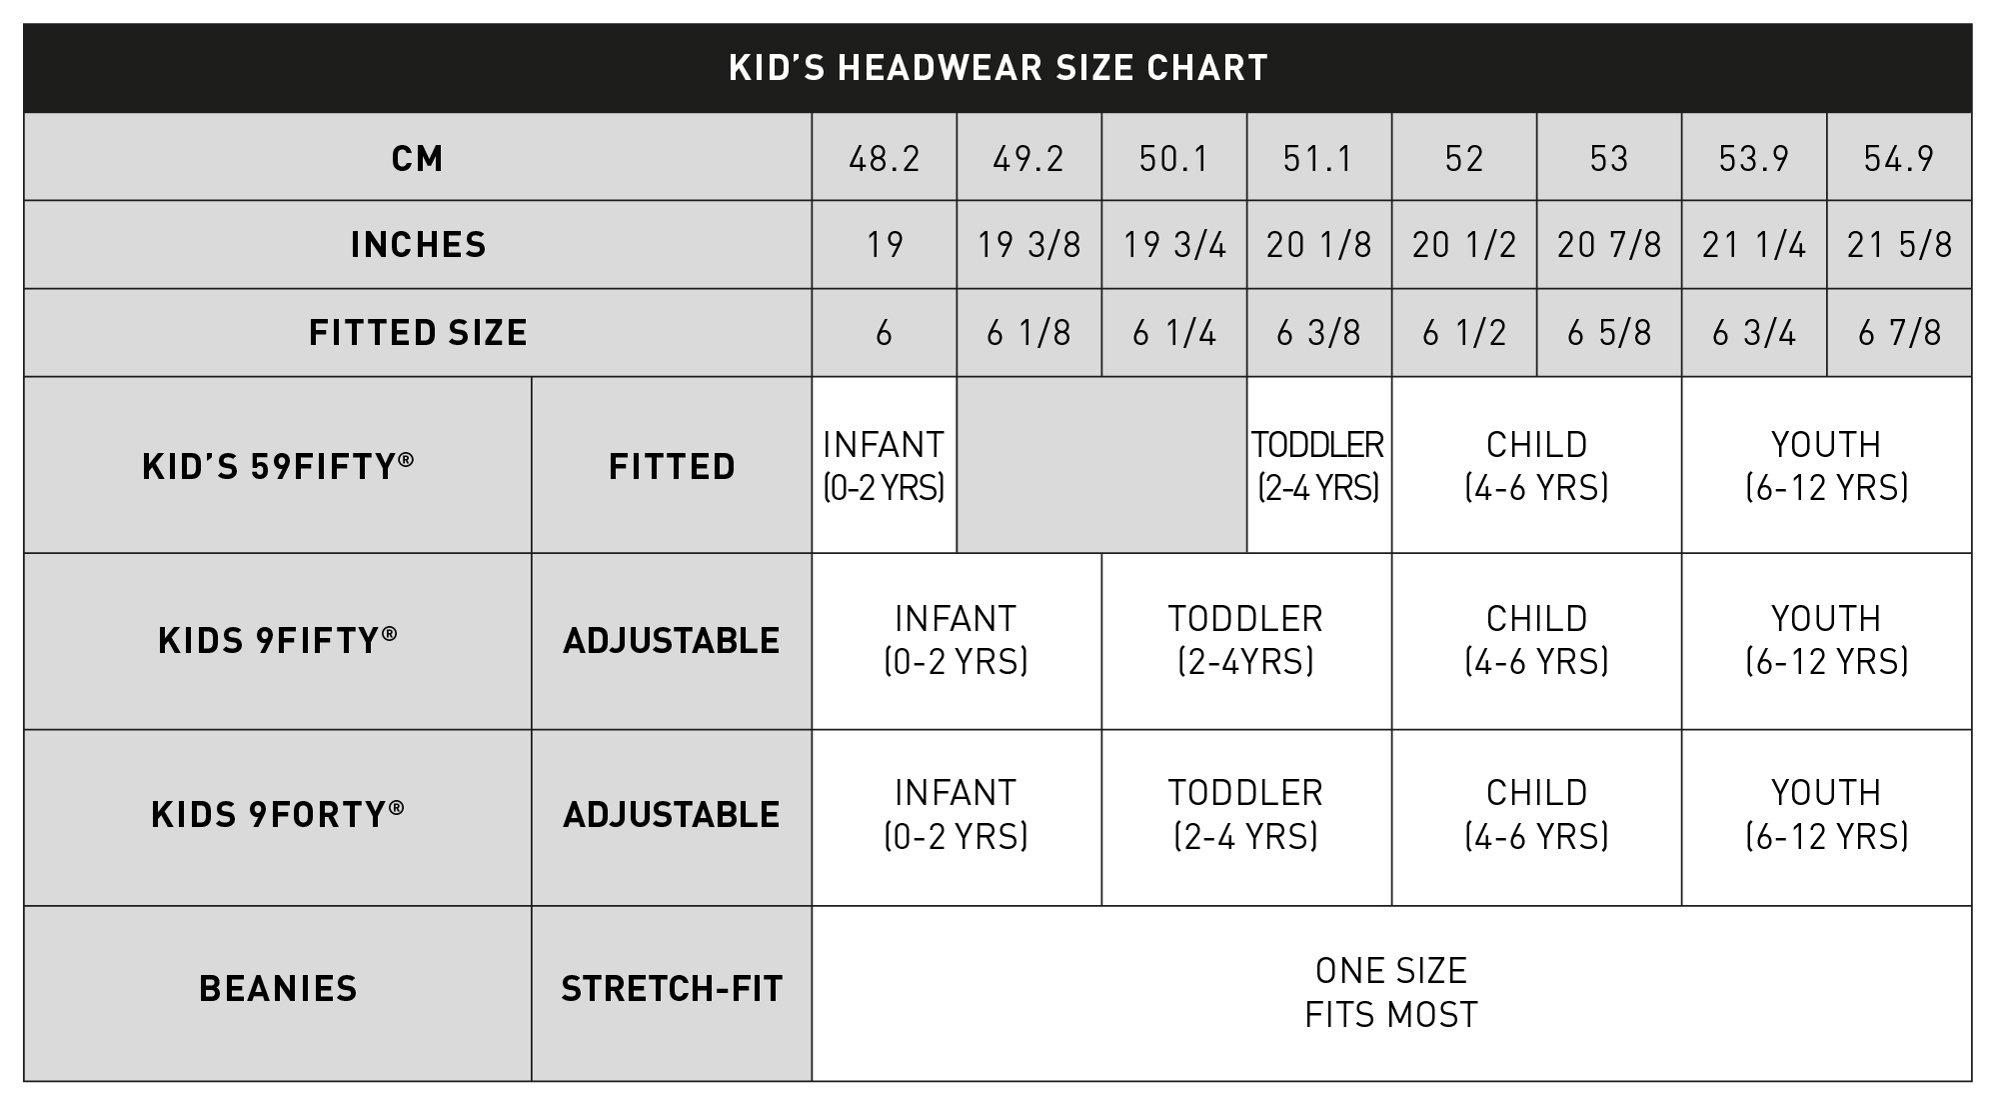 kids headwear size guide table for desktop